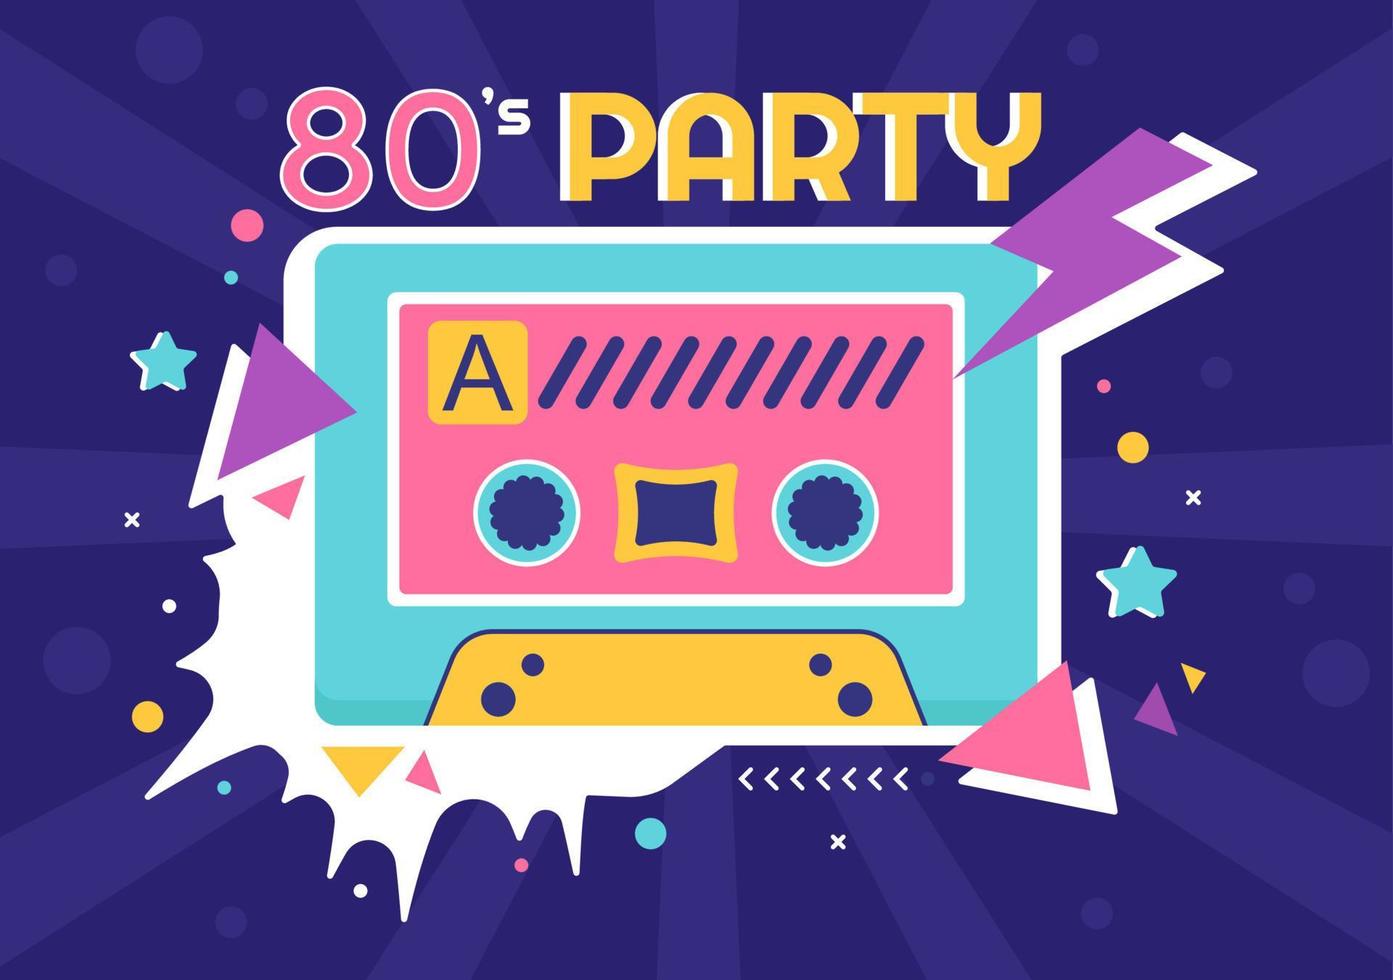 80-tals partytecknad bakgrundsillustration med retromusik, radiokassettspelare från 1980 och disco i gammaldags design vektor